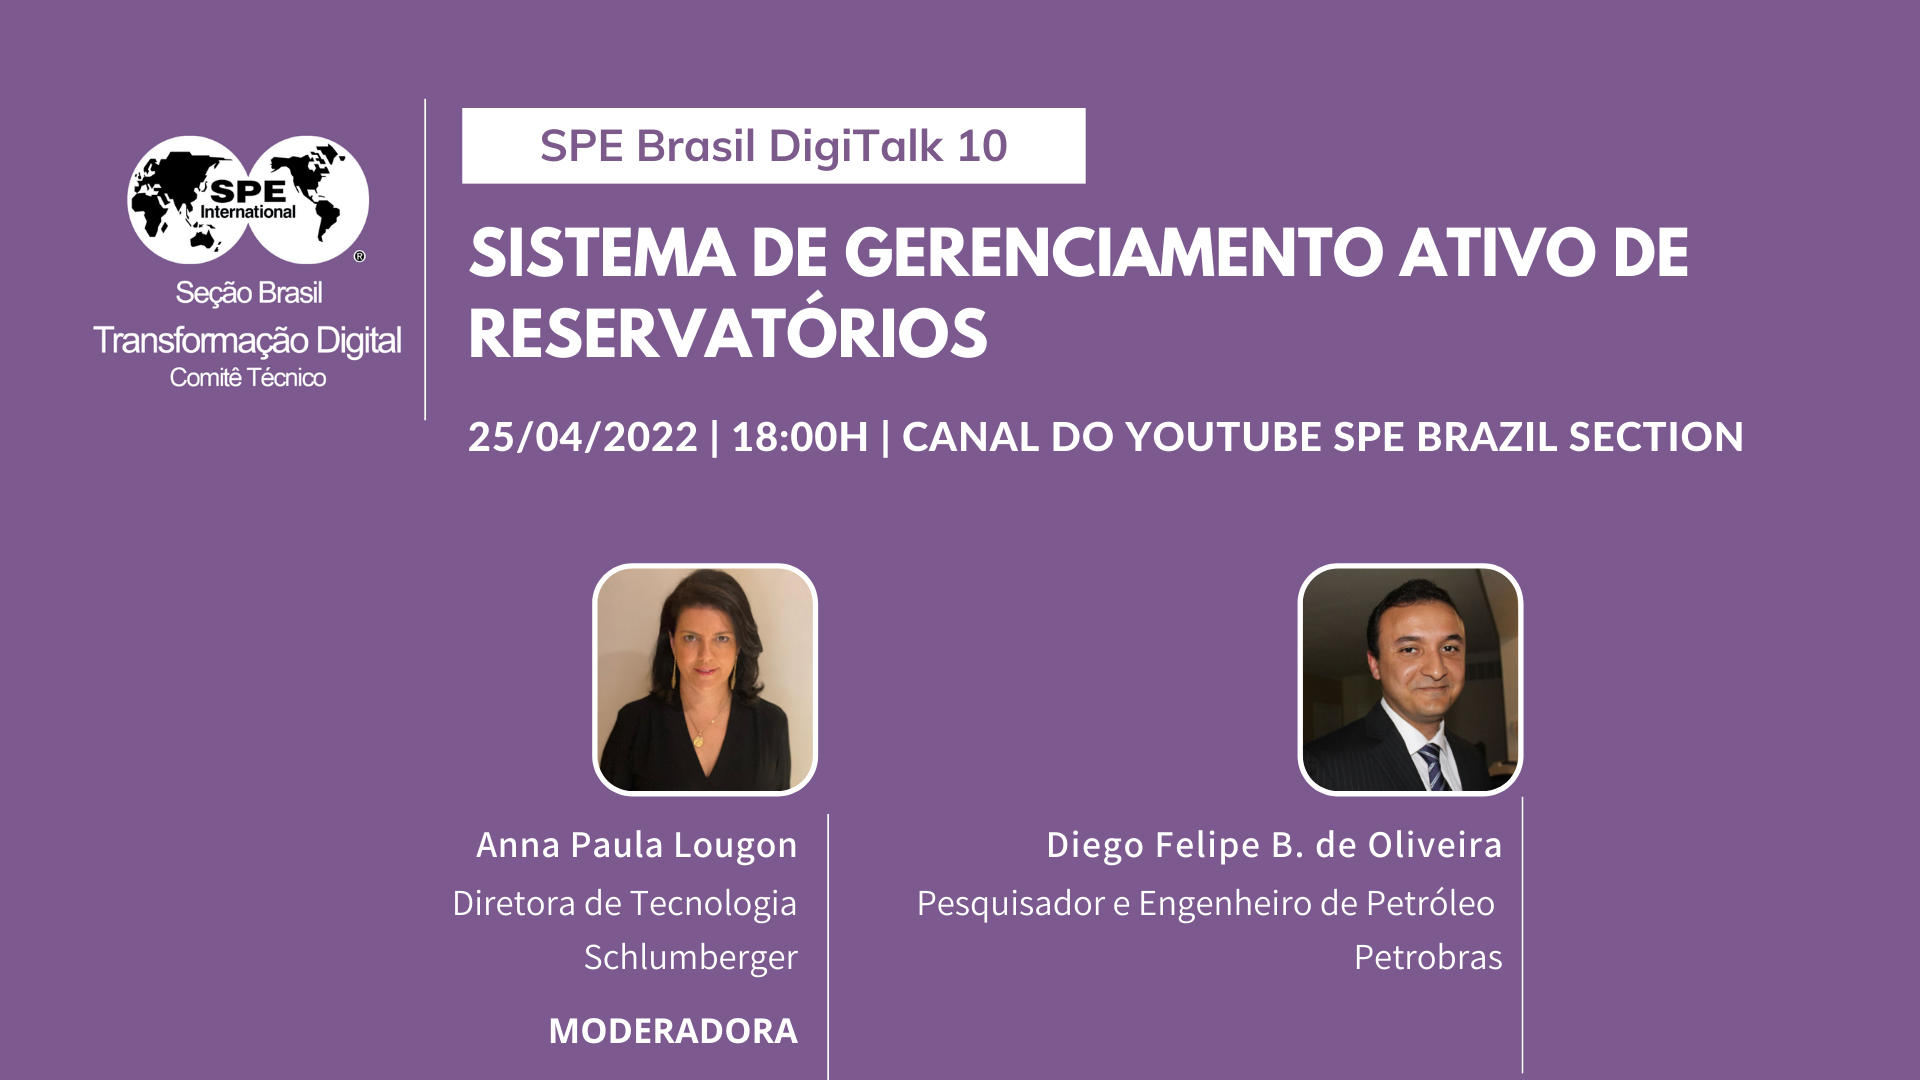 SPE Brasil DigiTalk 10: “Sistema de Gerenciamento Ativo de Reservatórios”.